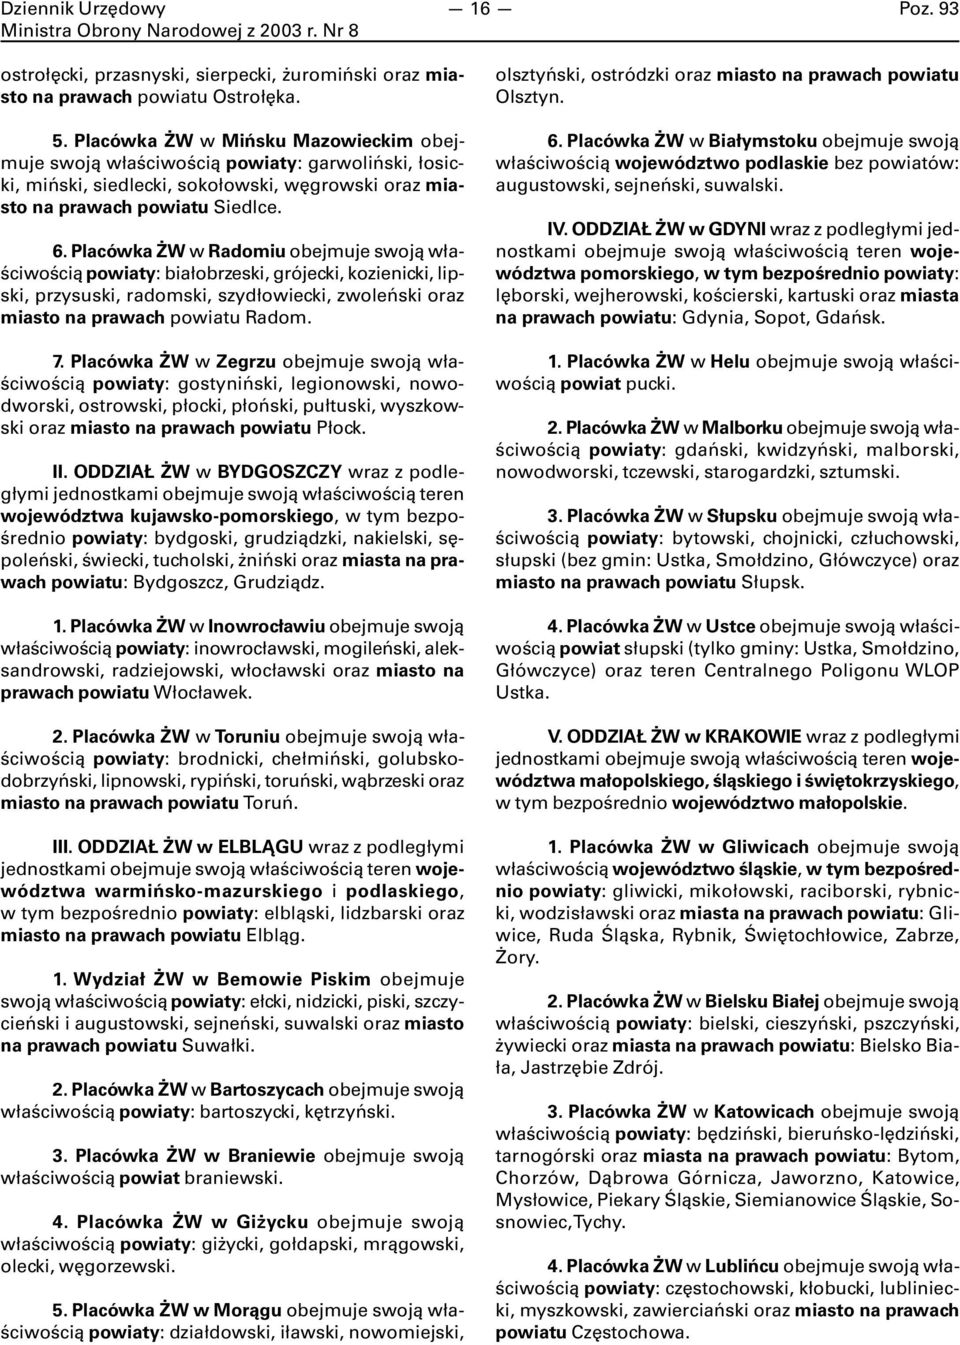 Placówka ŻW w Radomiu obejmuje swoją właściwością powiaty: białobrzeski, grójecki, kozienicki, lipski, przysuski, radomski, szydłowiecki, zwoleński oraz miasto na prawach powiatu Radom. 7.